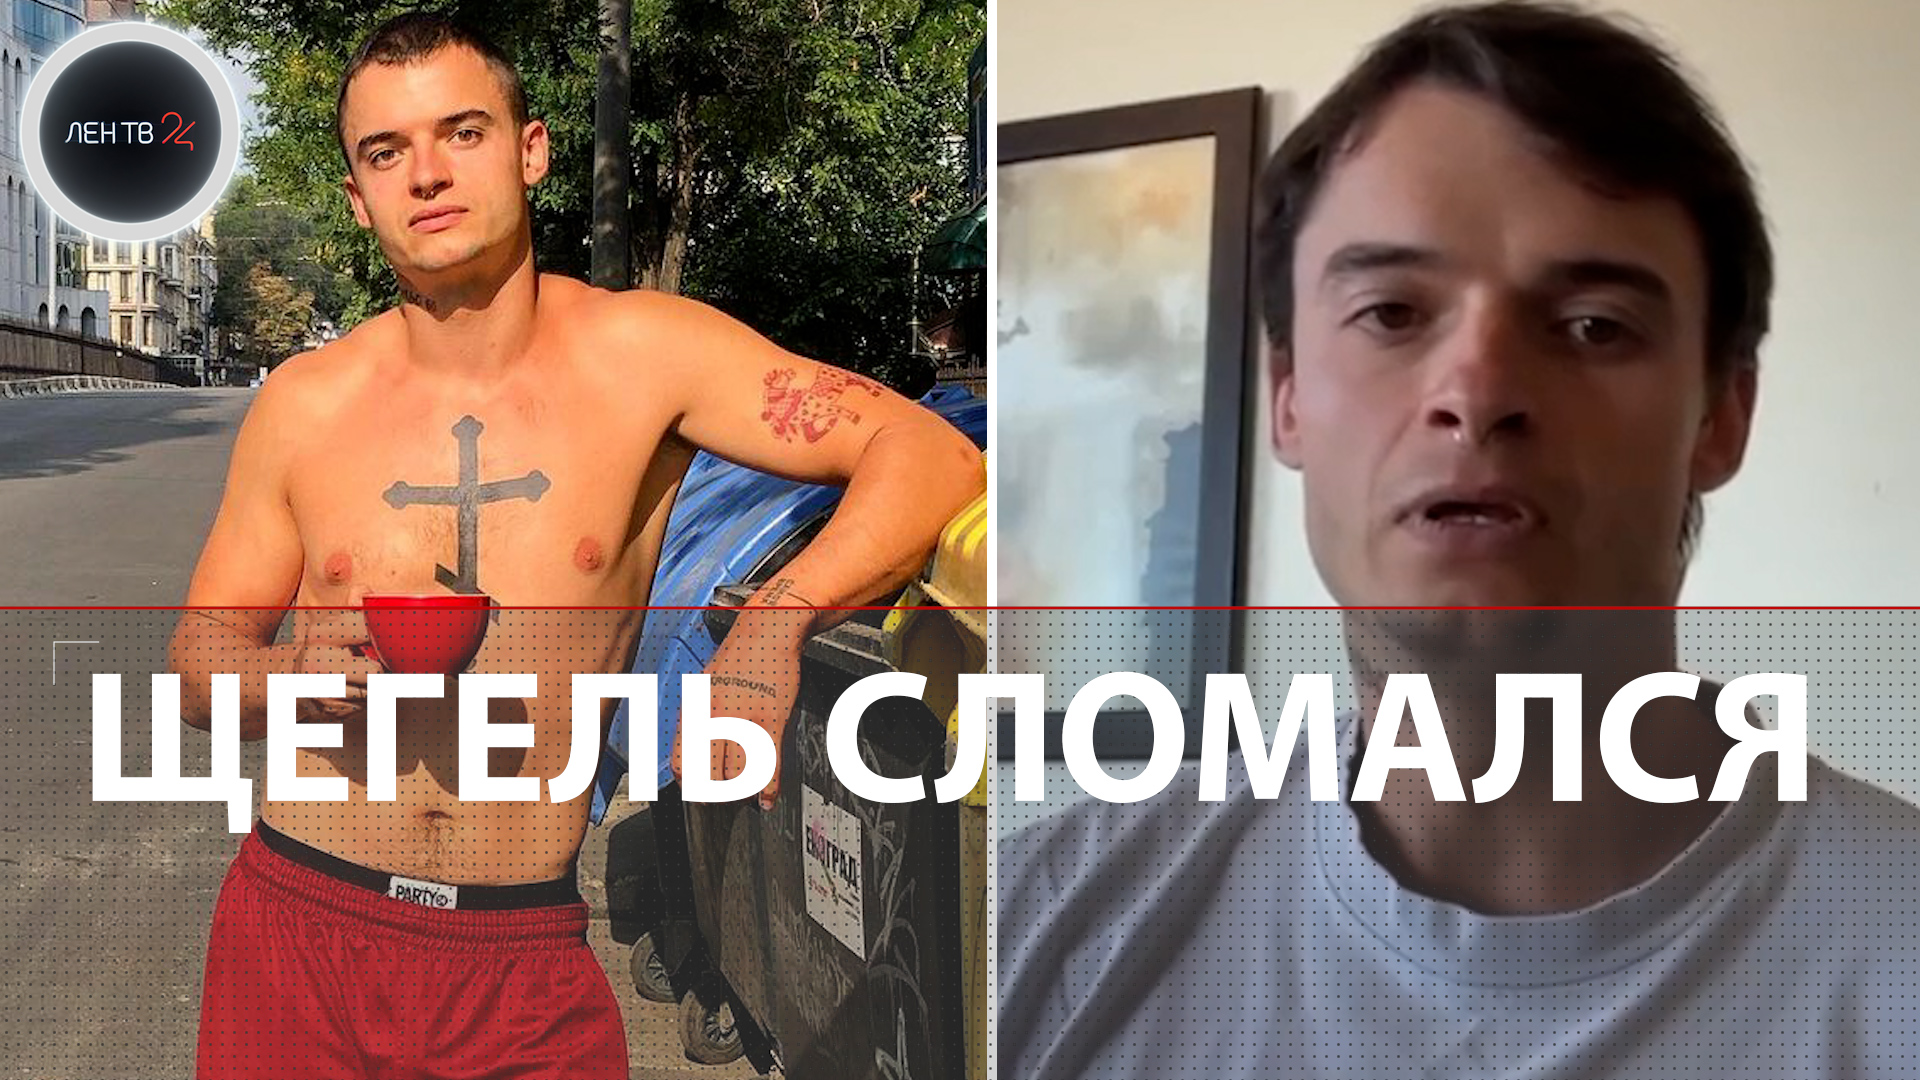 «Свалил как крыса» | Украинский стендапер Андрей Щегель : честное интервью и извинения